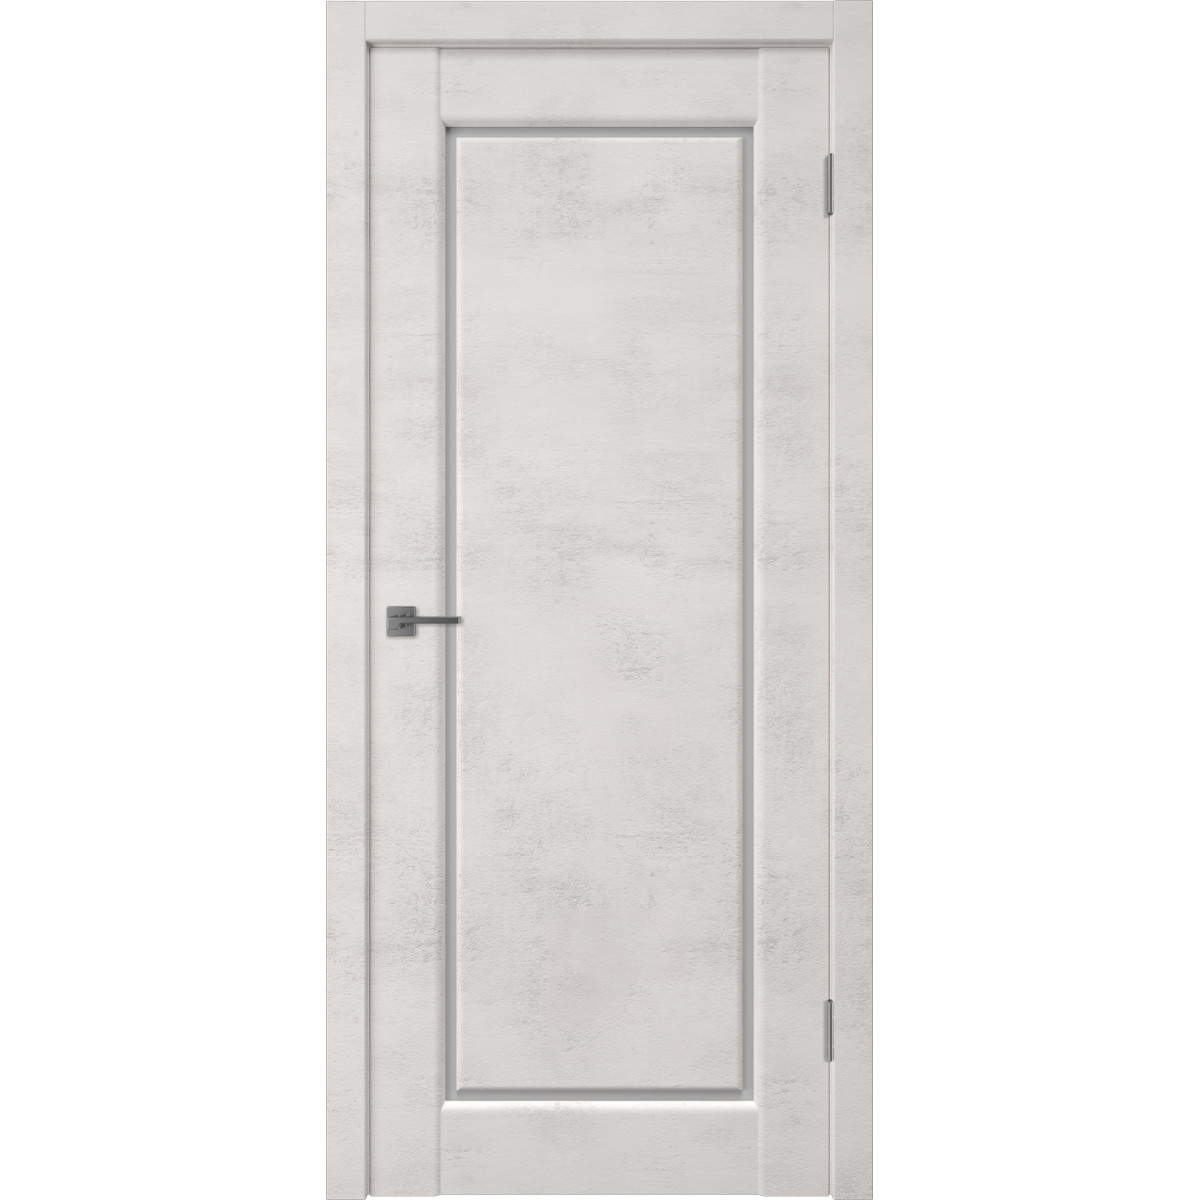 Дверь межкомнатная остеклённая Манхэттен 1 с фурнитурой 70х200 см, ПВХ, цвет лофт крем